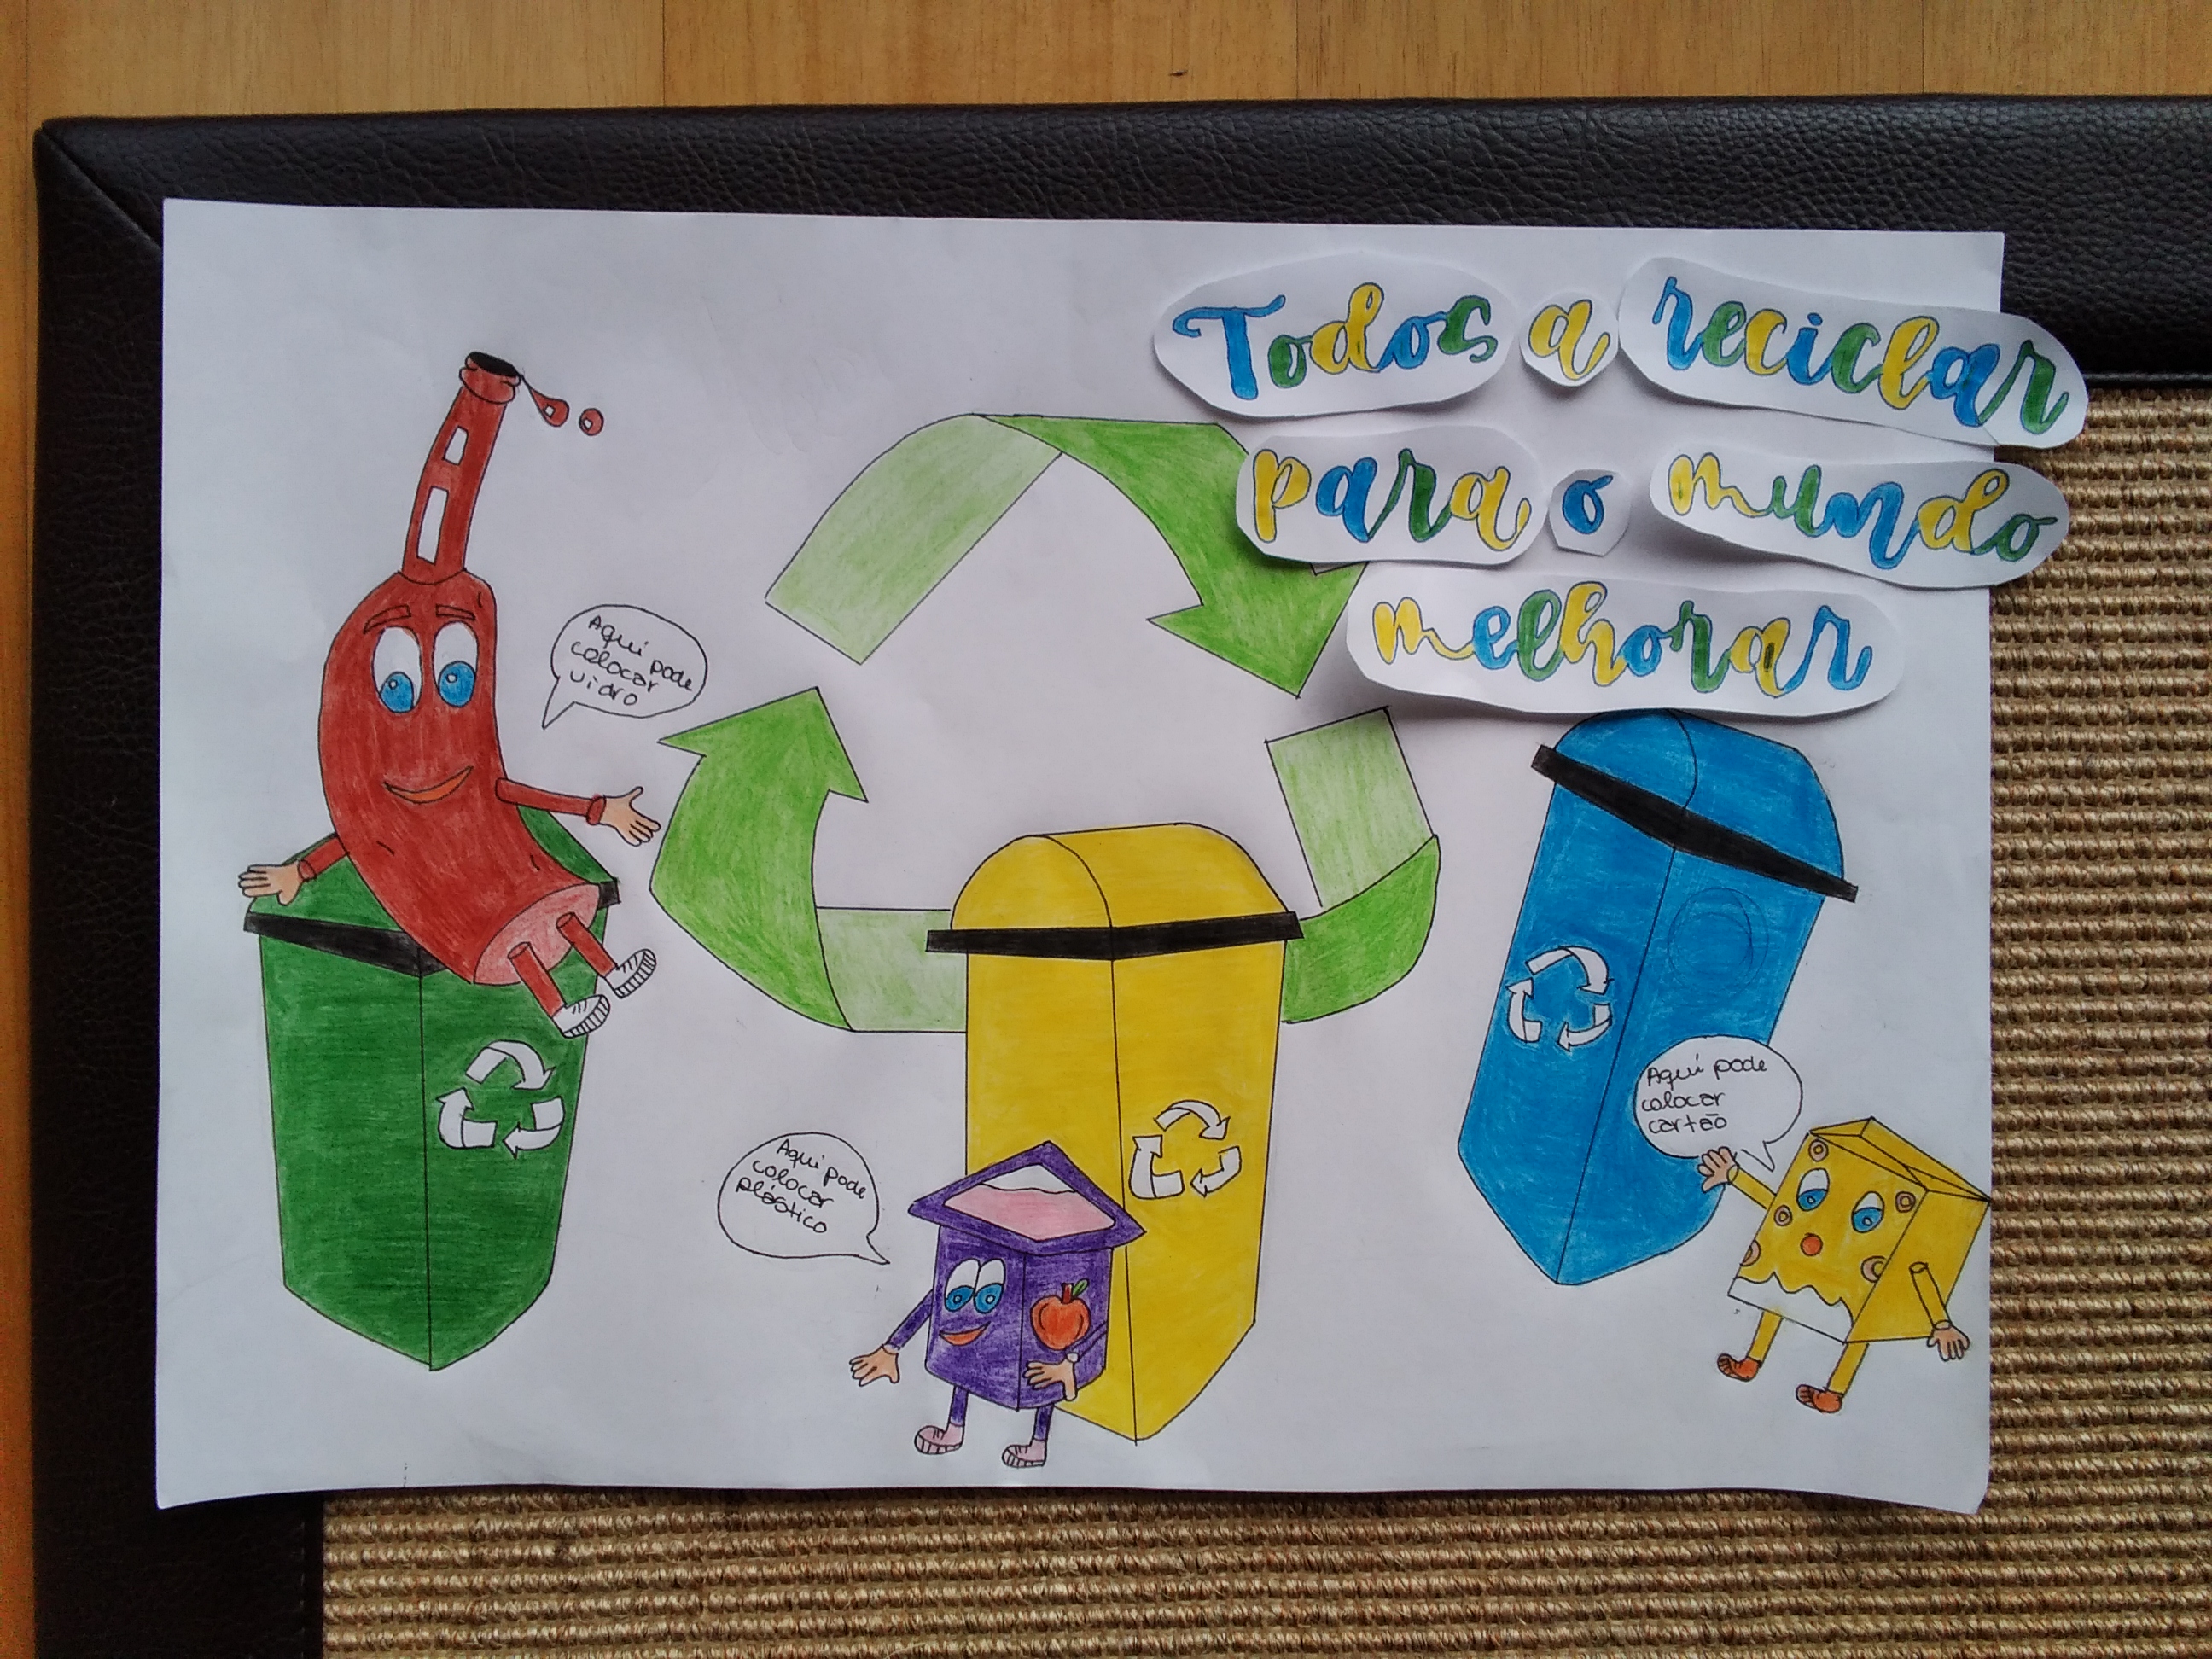 Todos a reciclar para o Mundo melhorar.